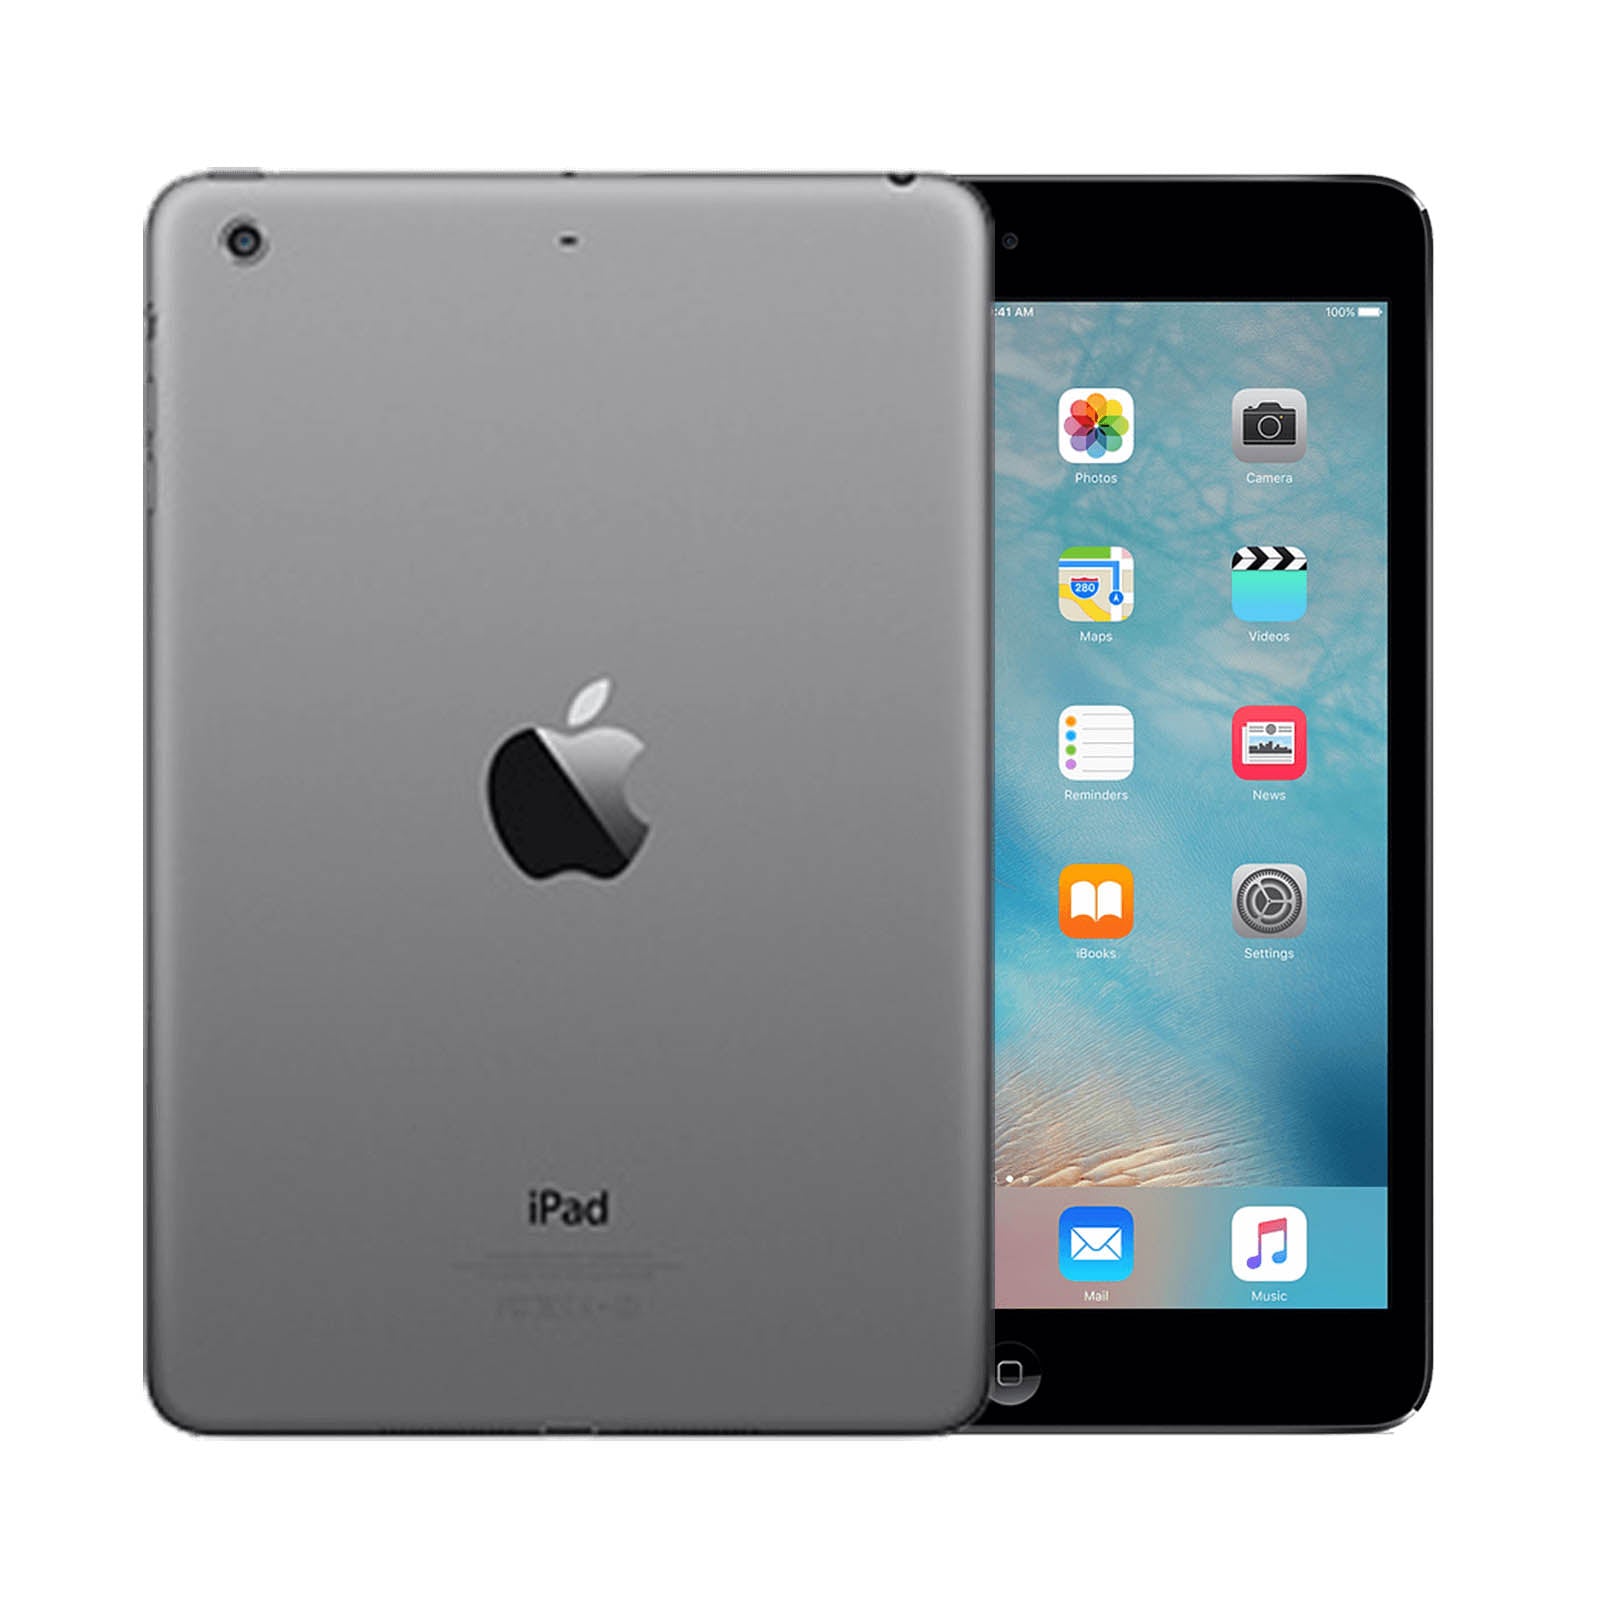 Apple iPad mini 2 16GB Black Pristine - Unlocked